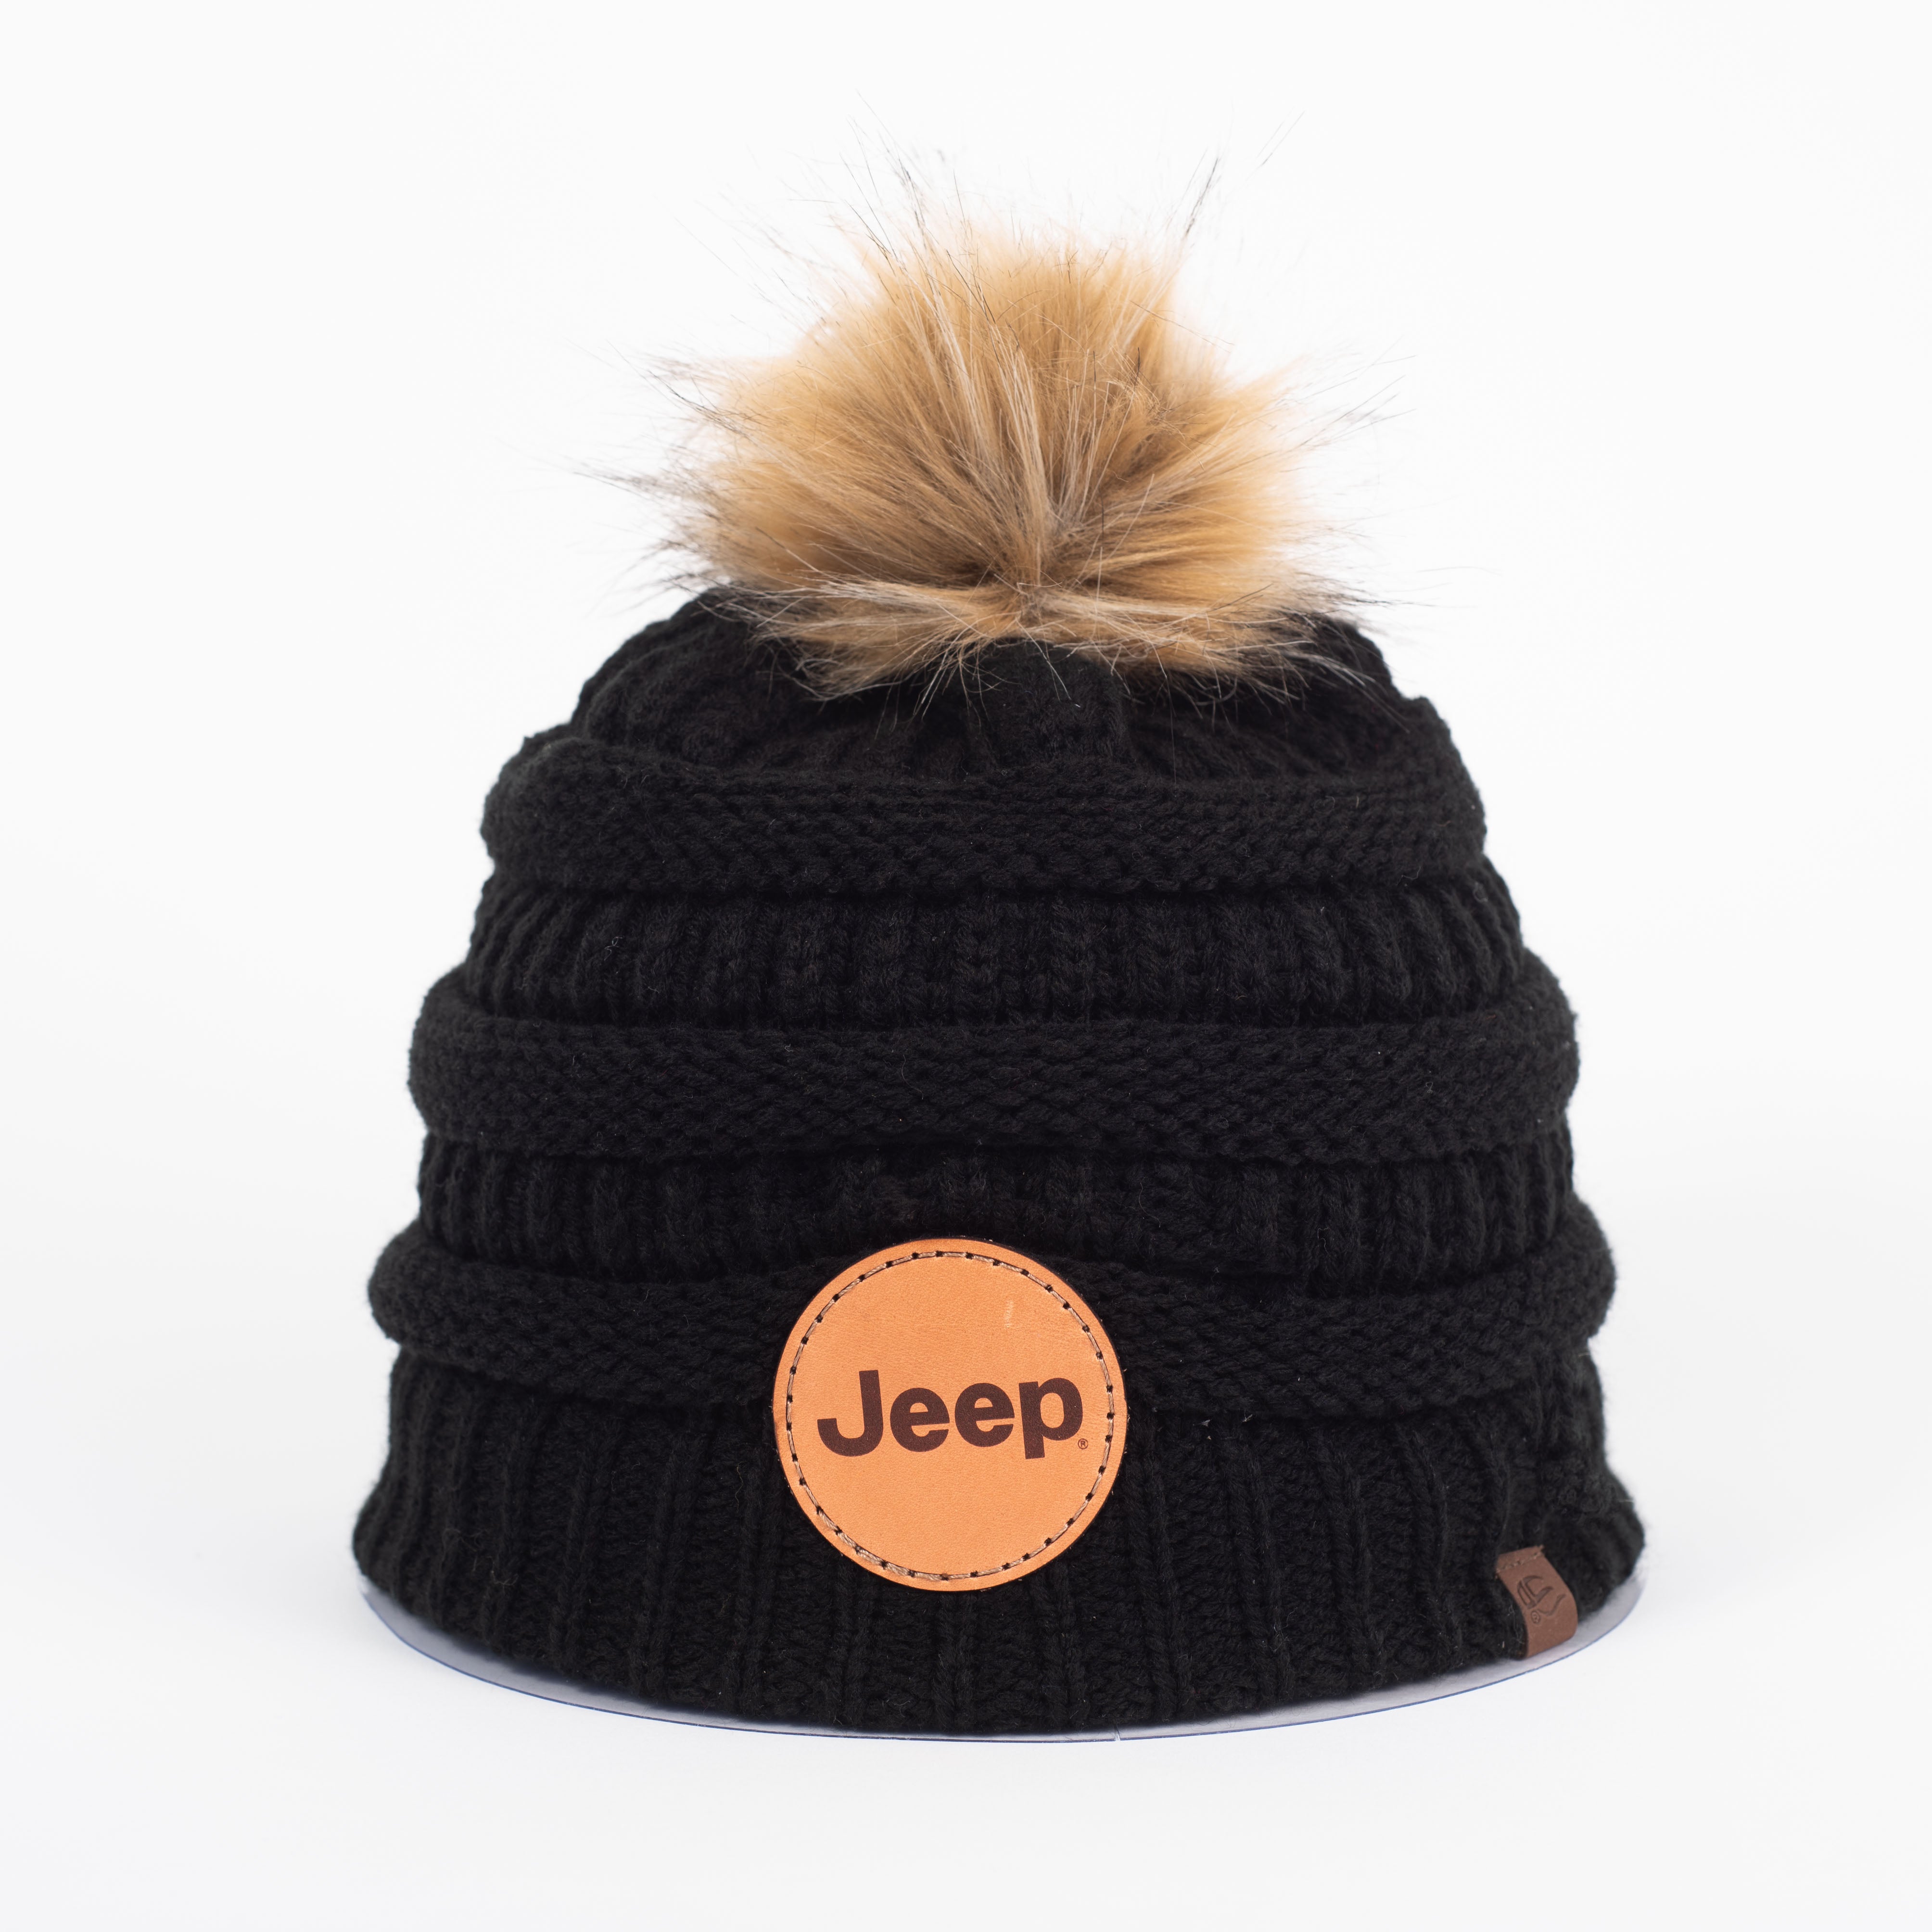 Black Jeep JEDCo knit hat pom pom beanie